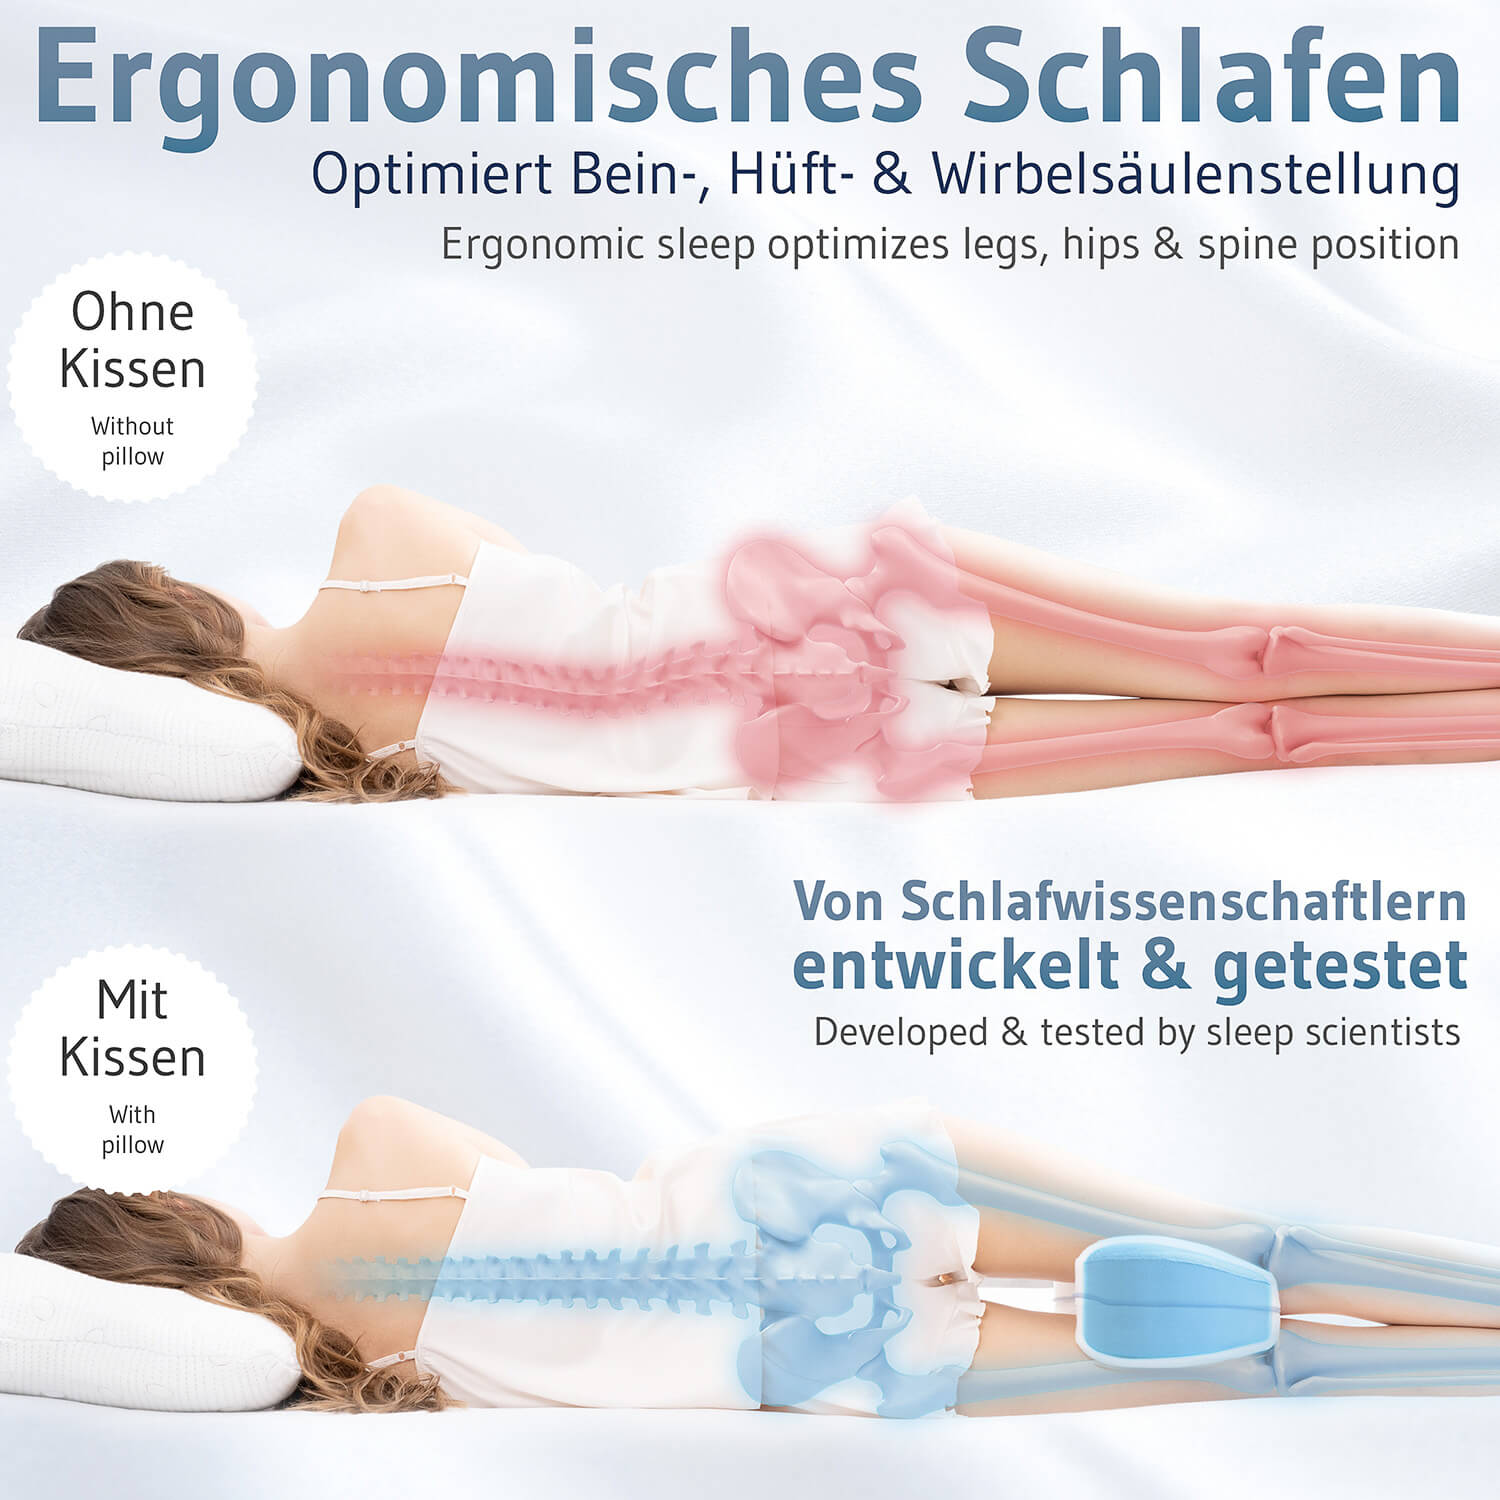  Kissen Arzt Knie Beine Arthrose Kopfschmerzen von schiena. by  resingomm.Richtet die auch, verbessert die Haltung von Seite